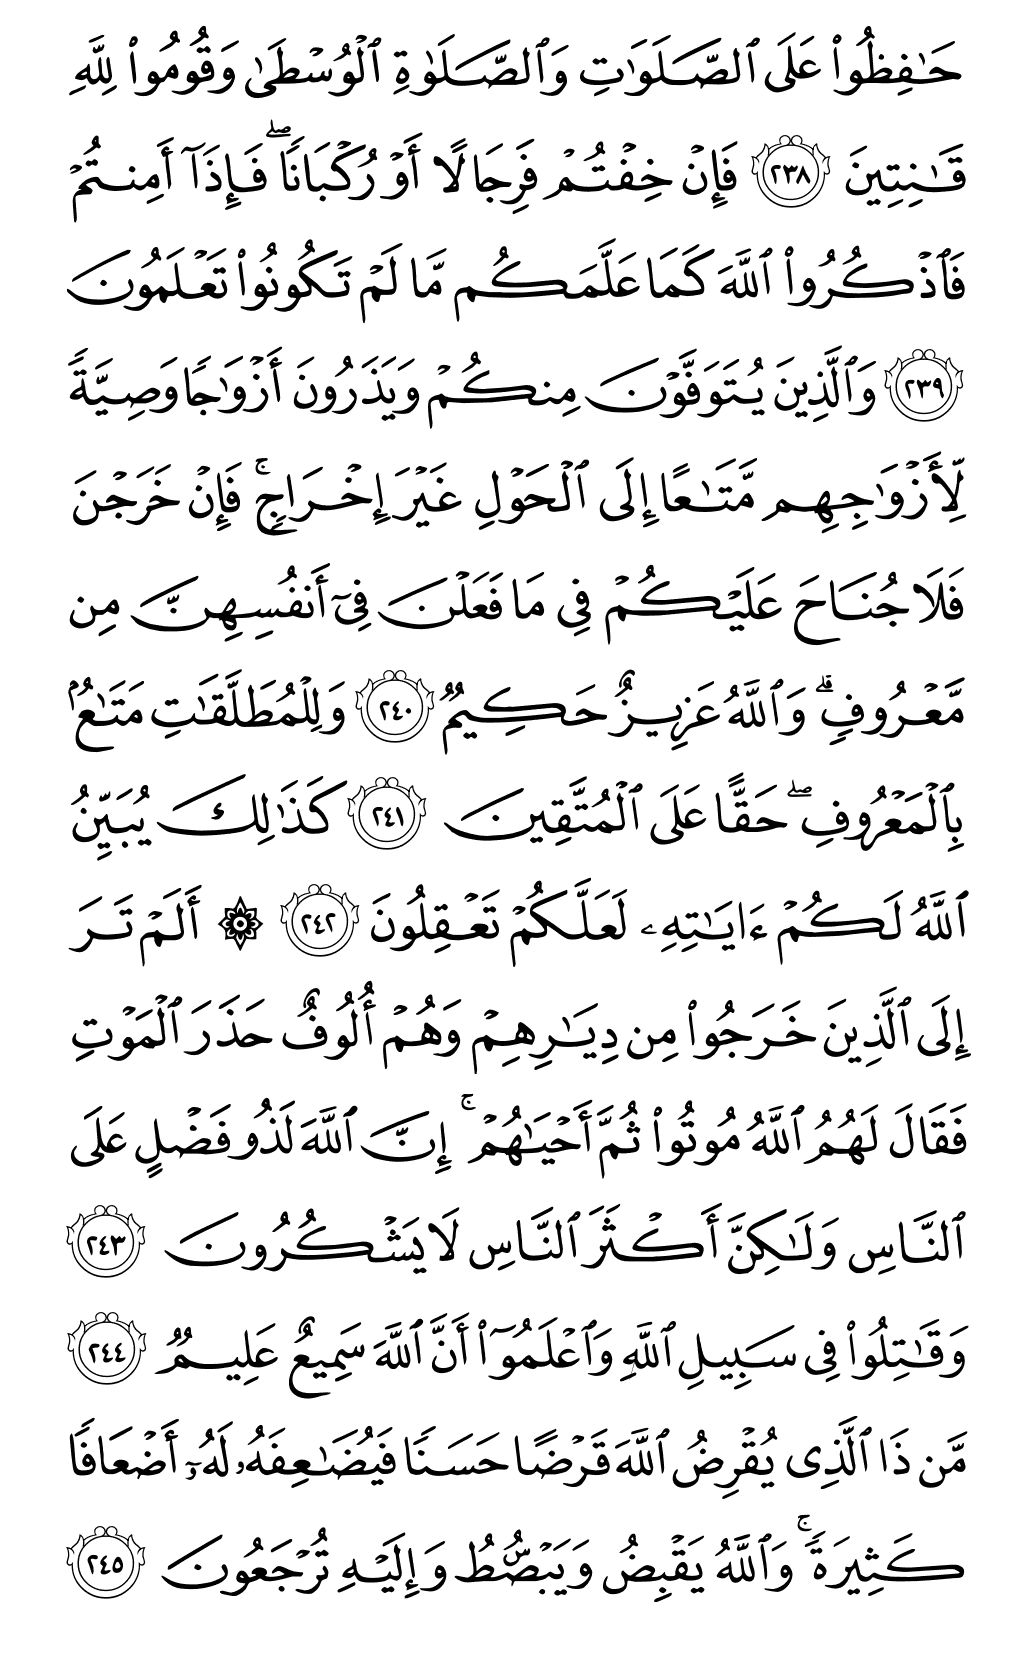 الصفحة رقم 39 من القرآن الكريم